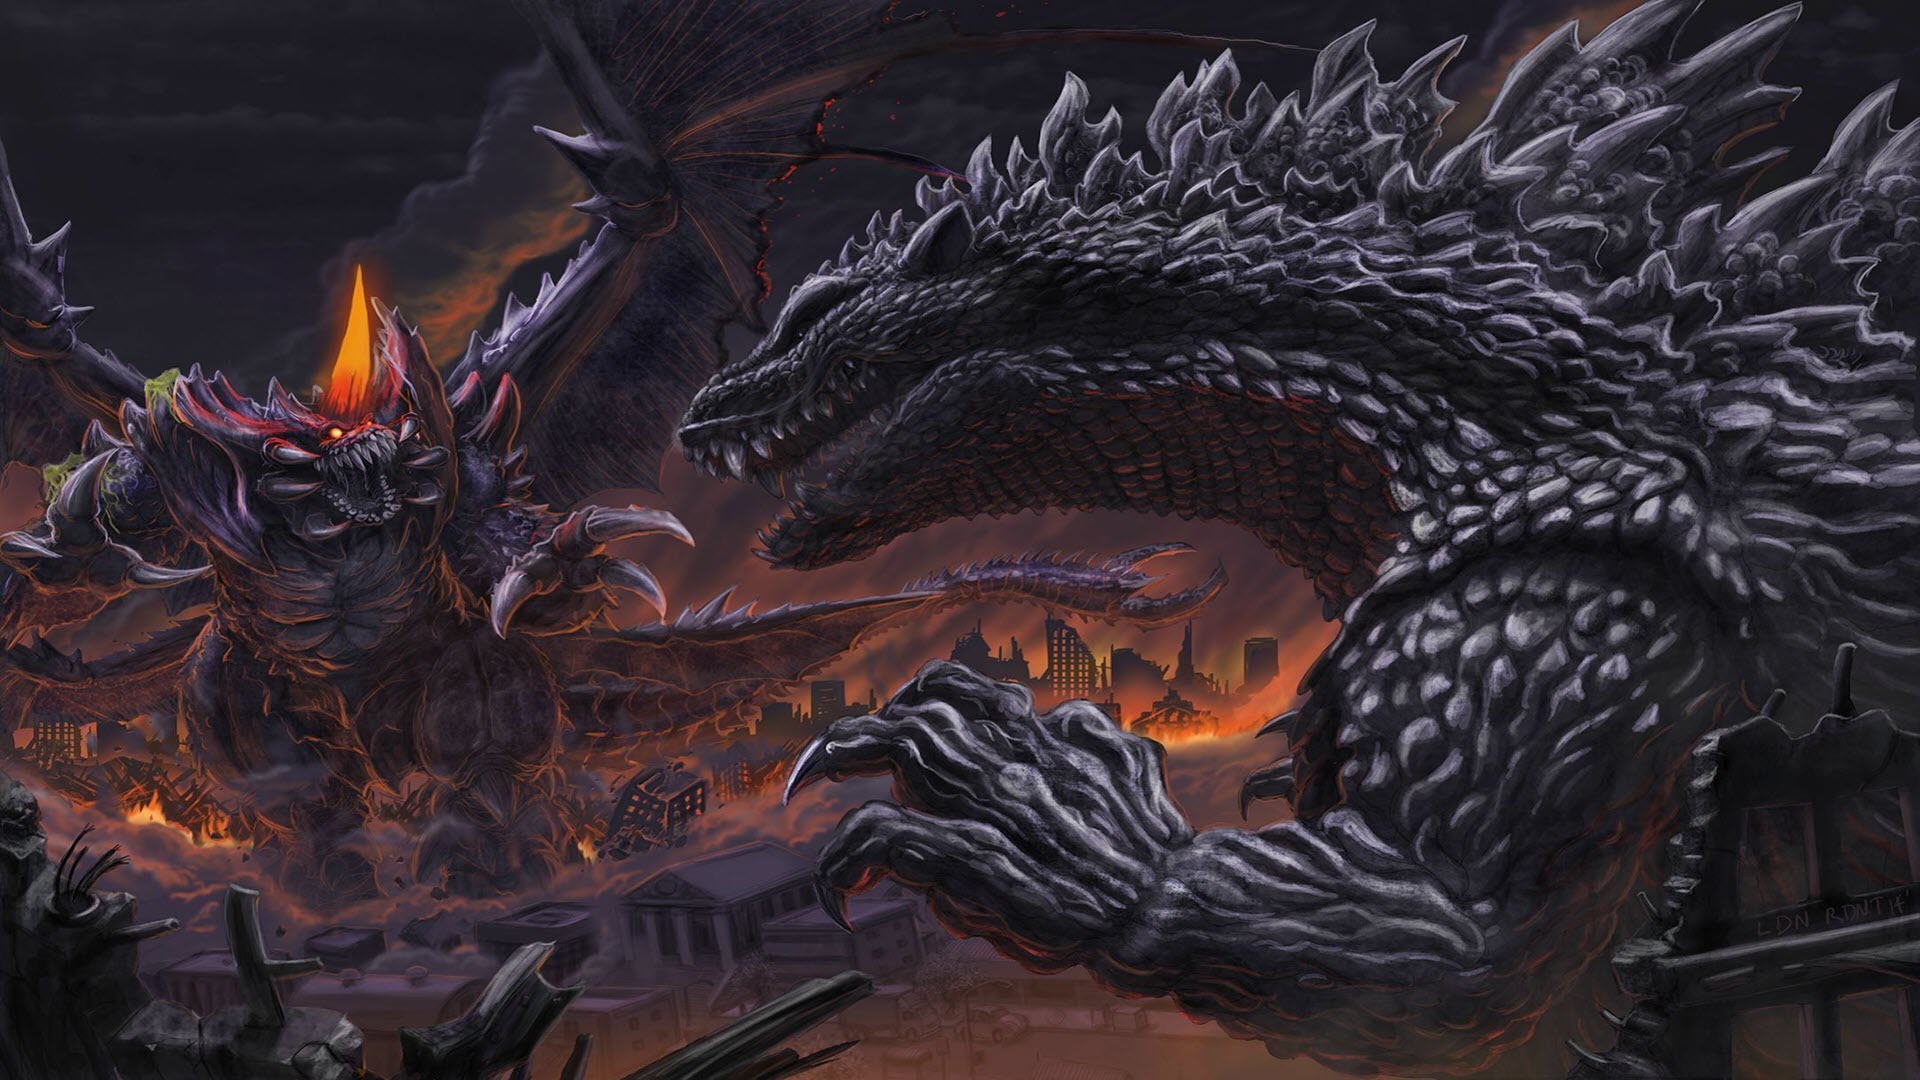 Bộ hình nền Godzilla 4K đẹp